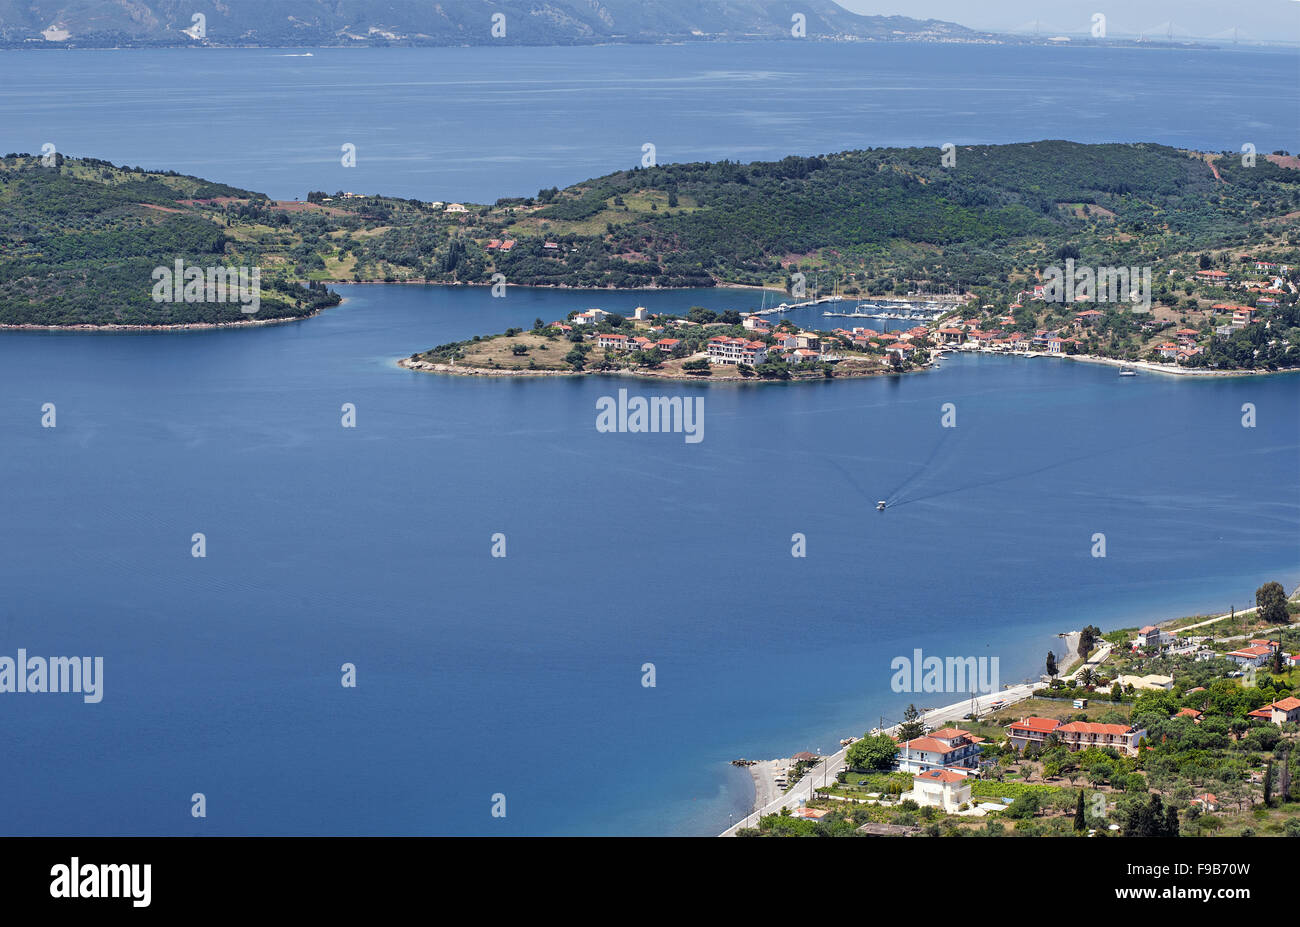 Vue panoramique de l'île de Trizonia et village situé dans la région du golfe de Corinthe en Phocide, Grèce centrale Banque D'Images